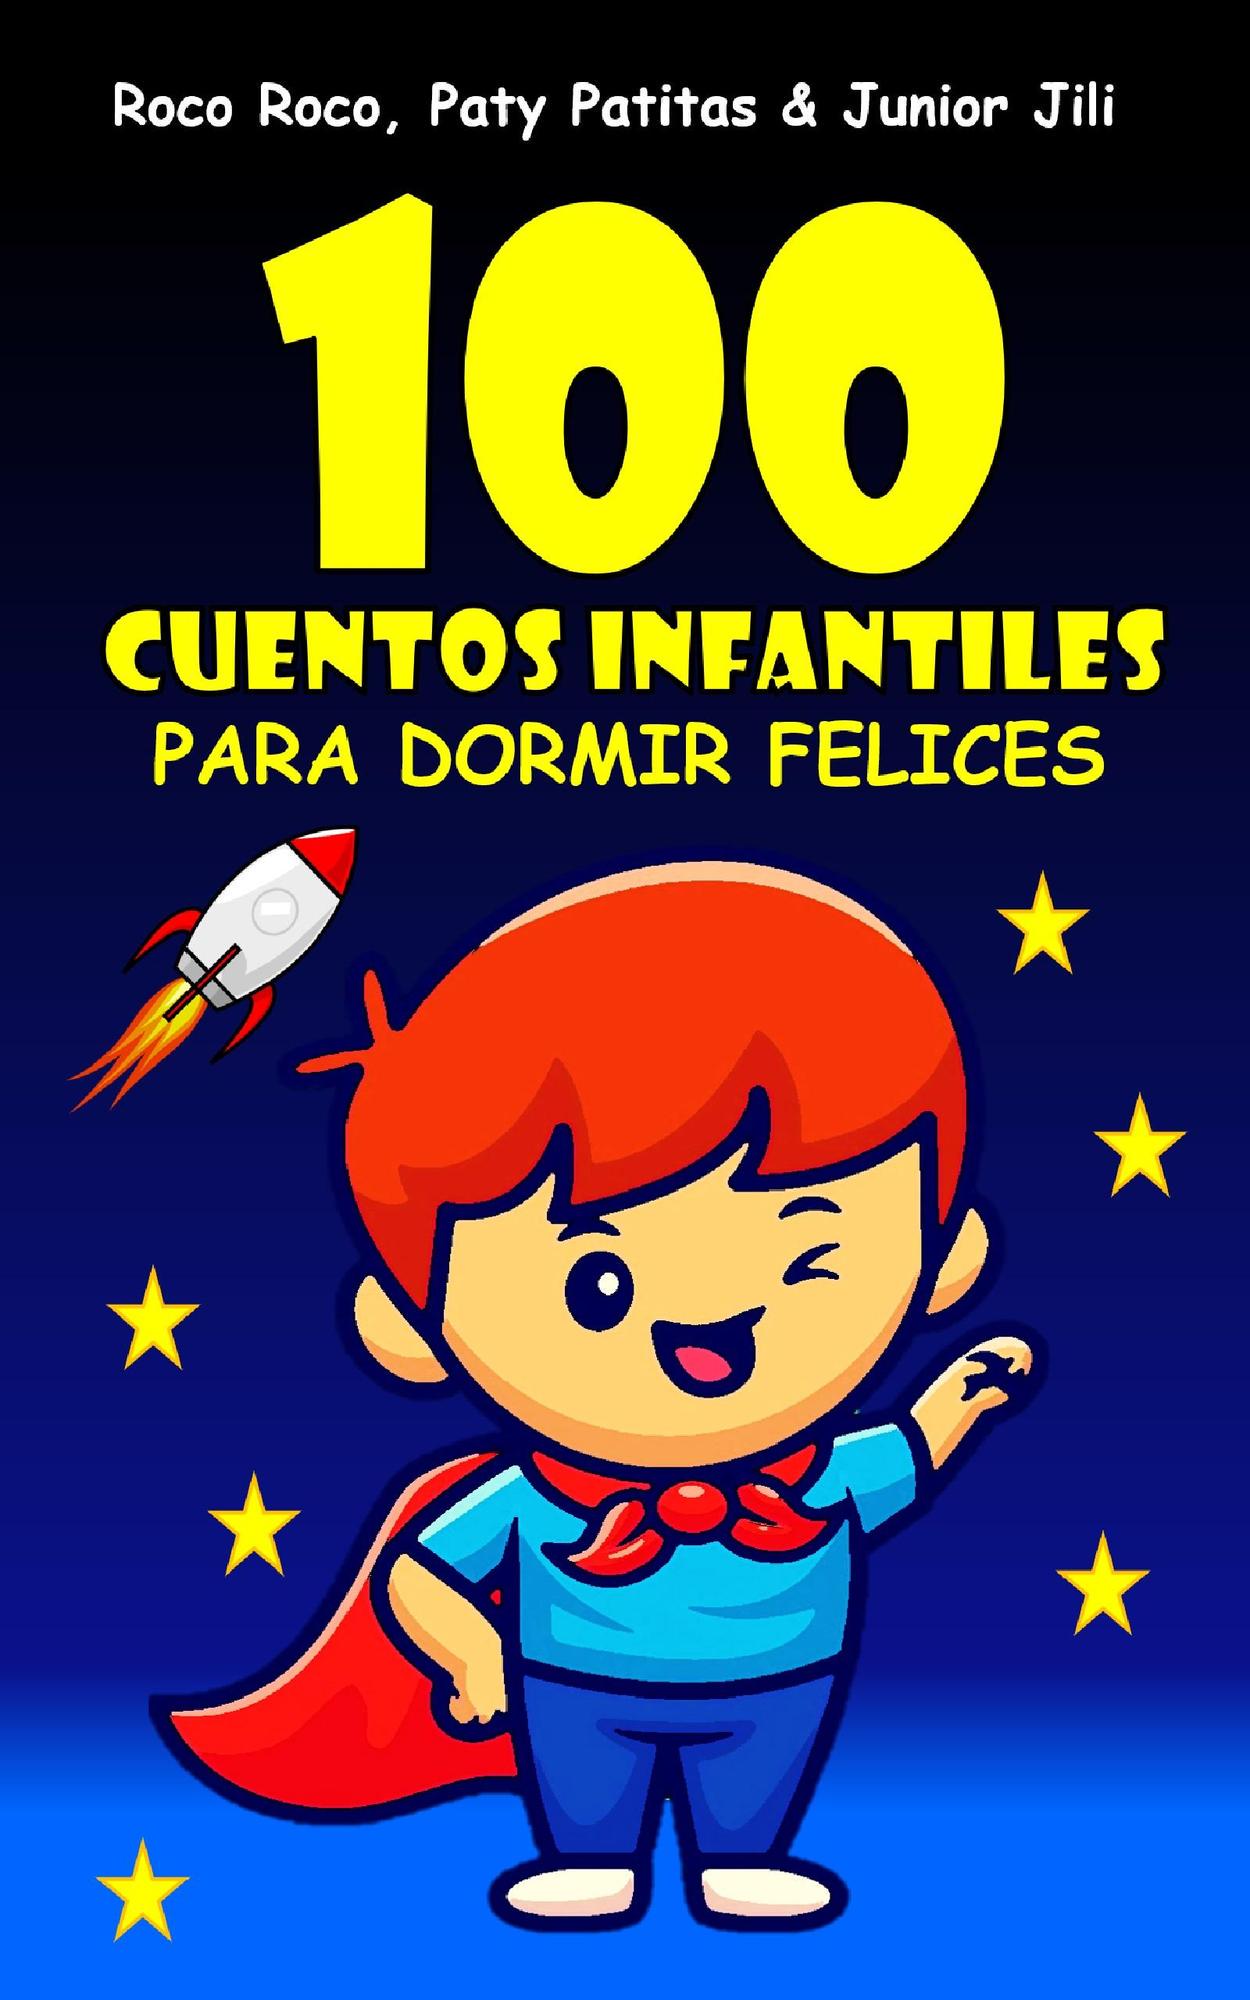 Smashwords – Cuentos Infantiles para dormir felices – a book by Roco Roco